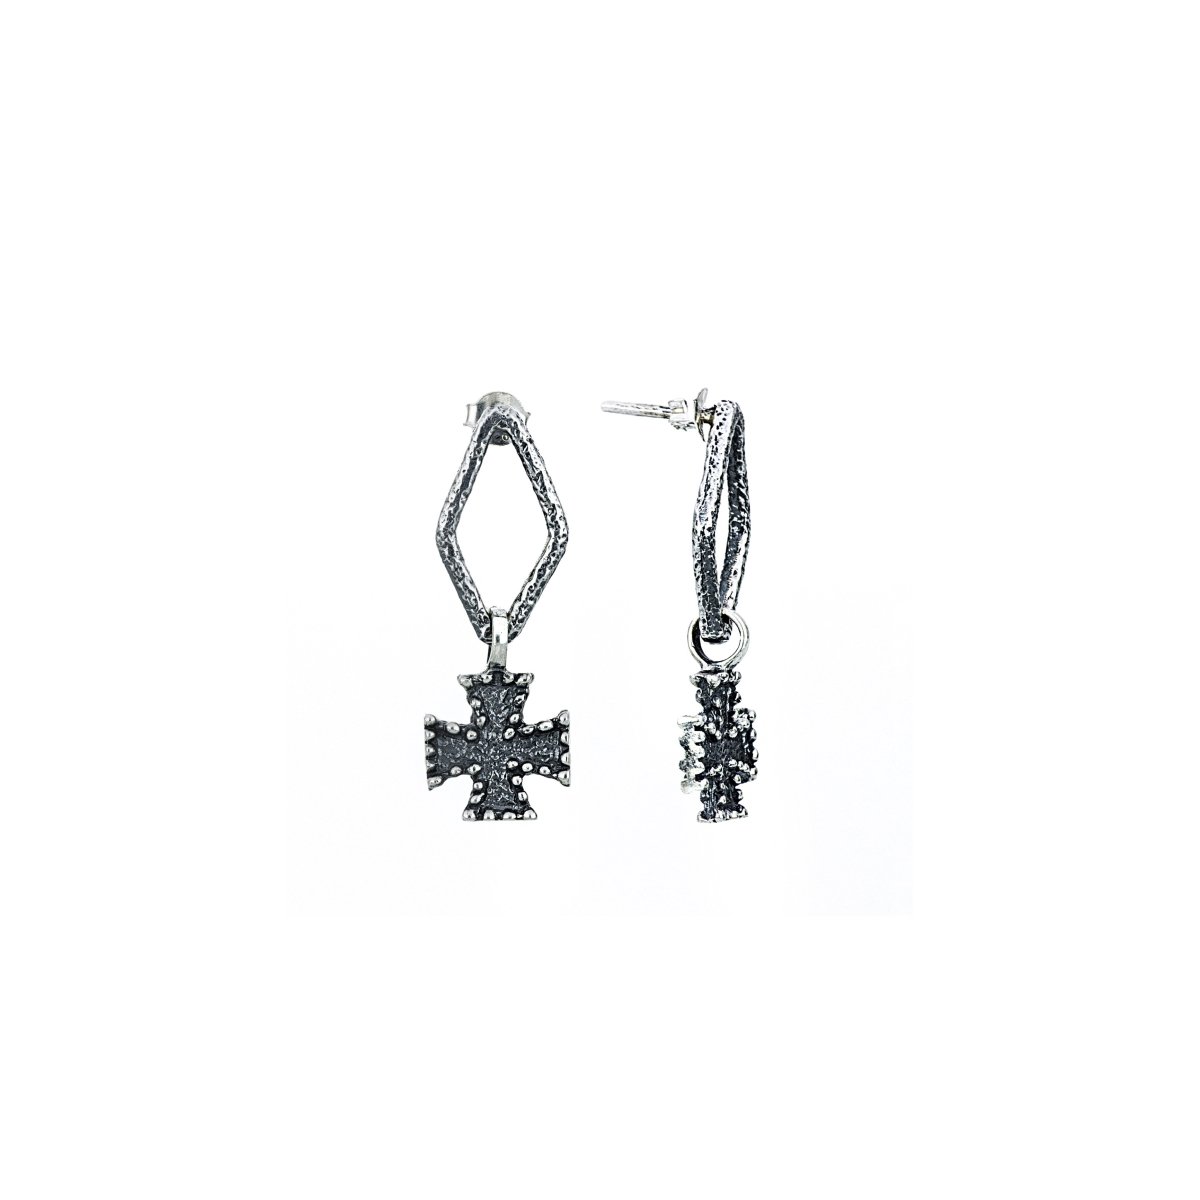 Earrings "Cilician Cross" - Pregomesh